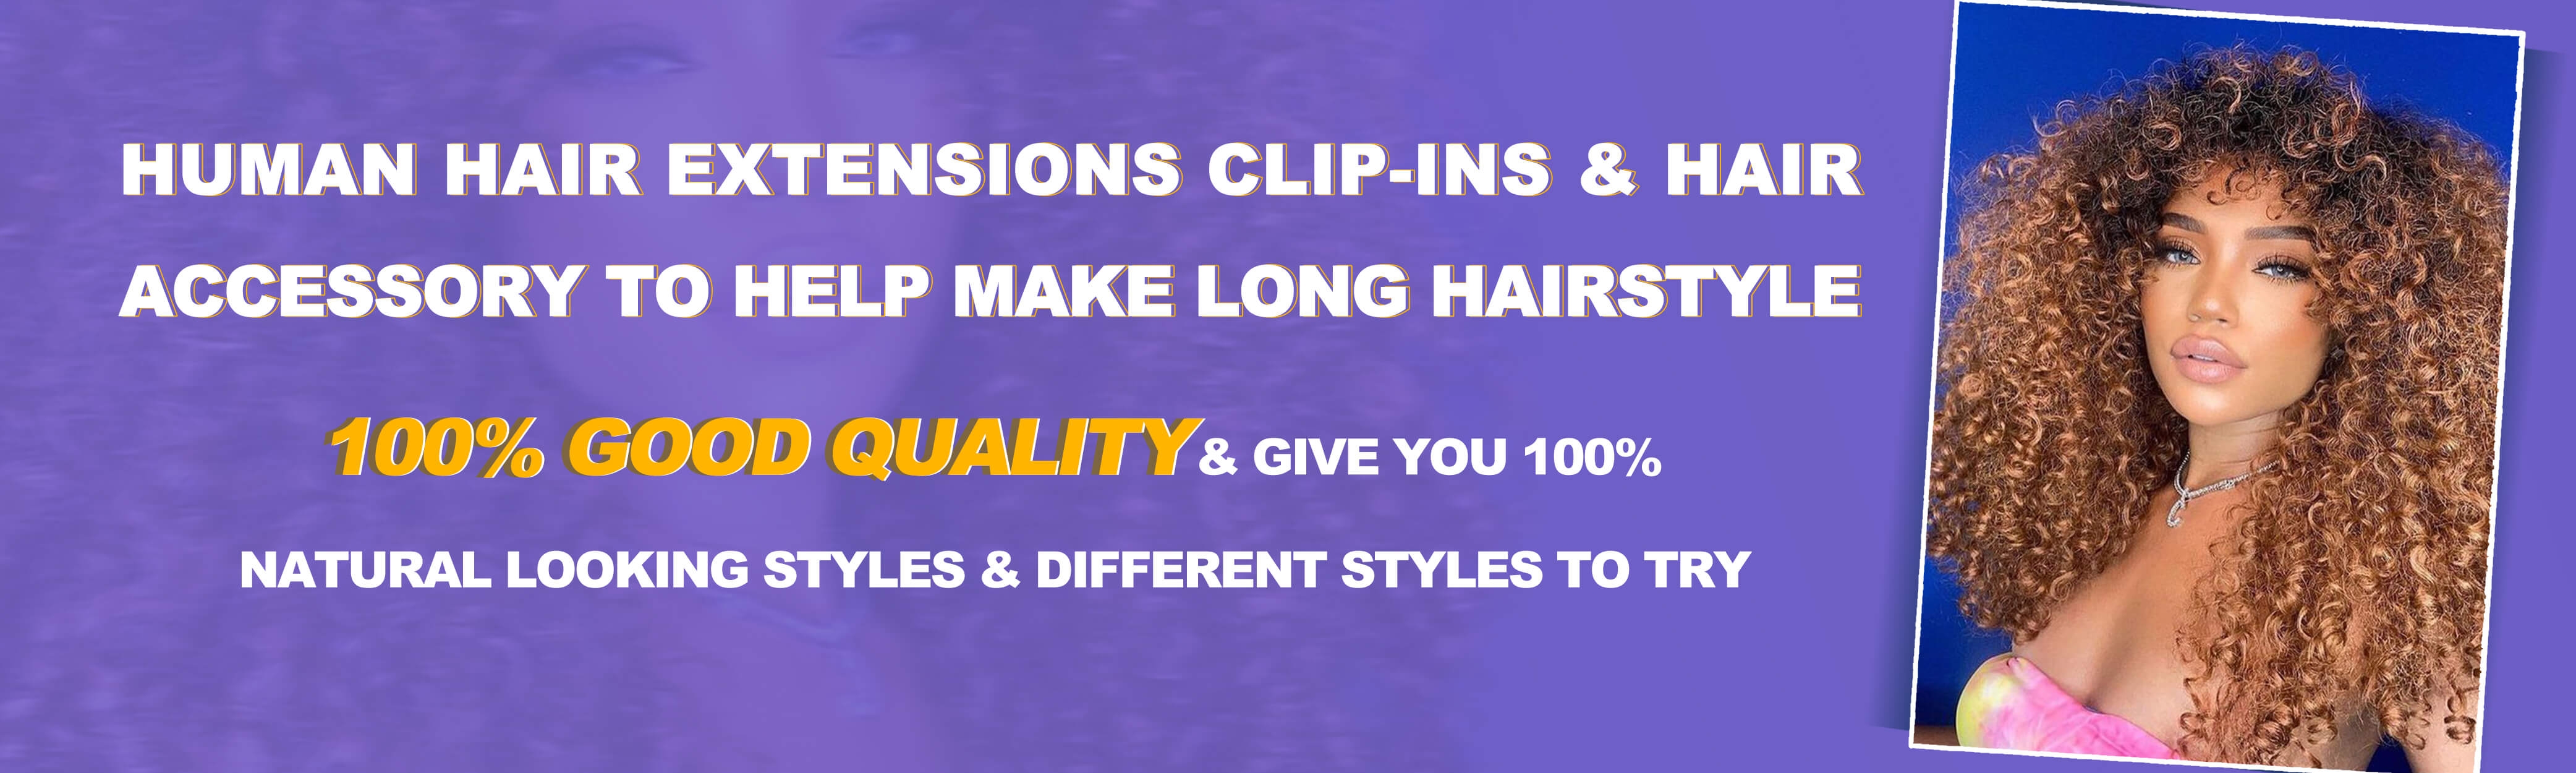 Storen ondersteuning Het koud krijgen Human Hair Extensions Online - Quality Clip-In, Sew-In, Tape Extension